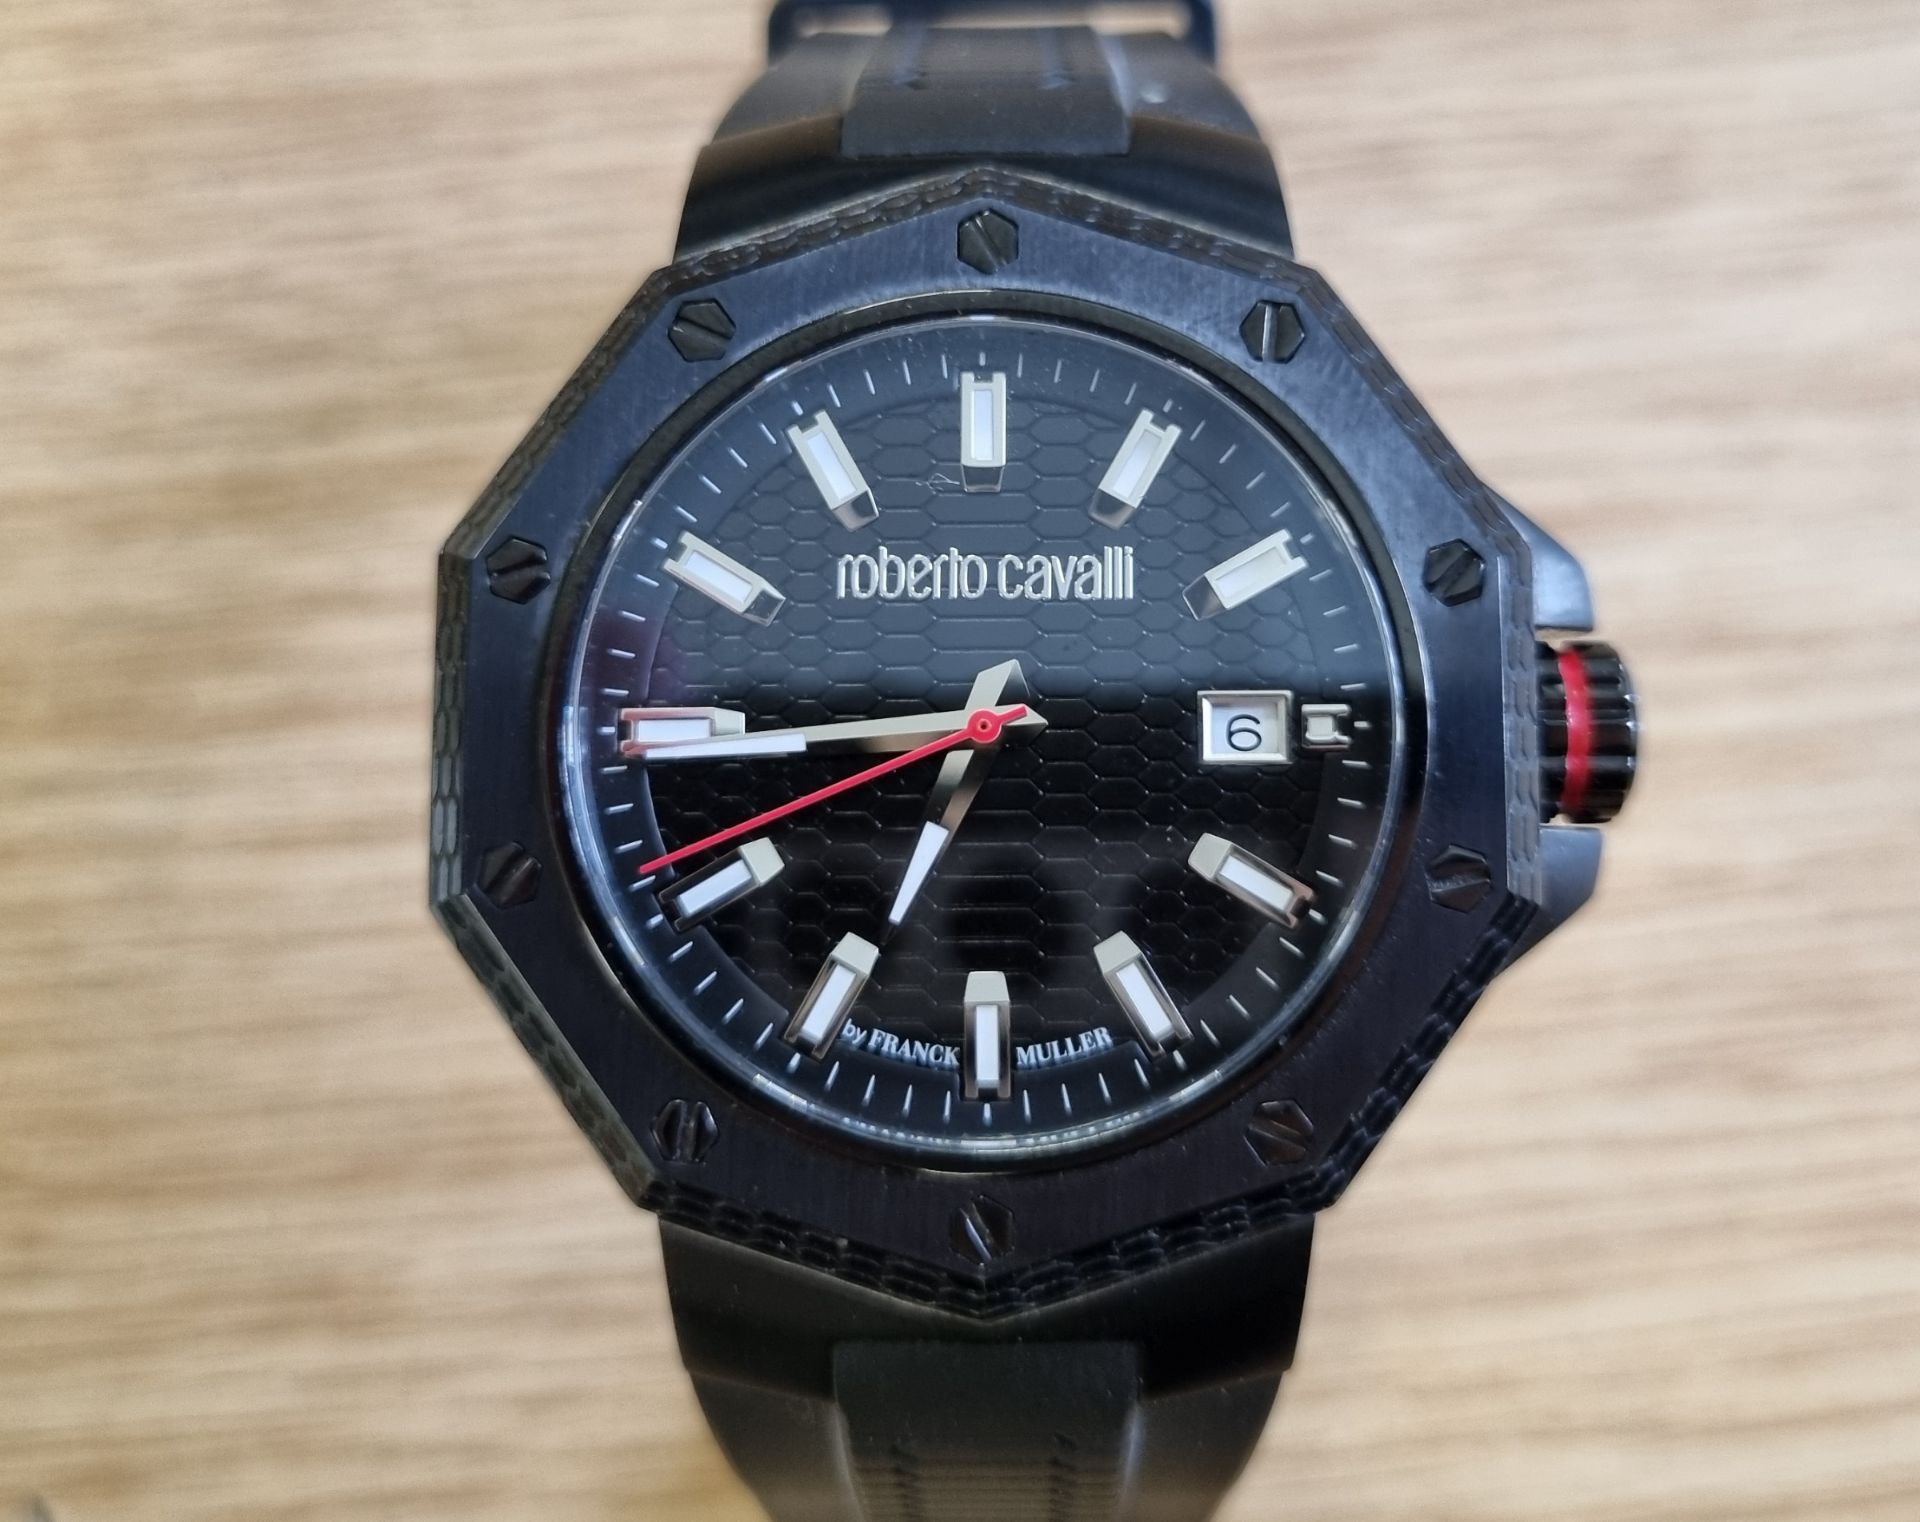 Roberto Cavalli IG038 men's wristwatch - Image 3 of 6